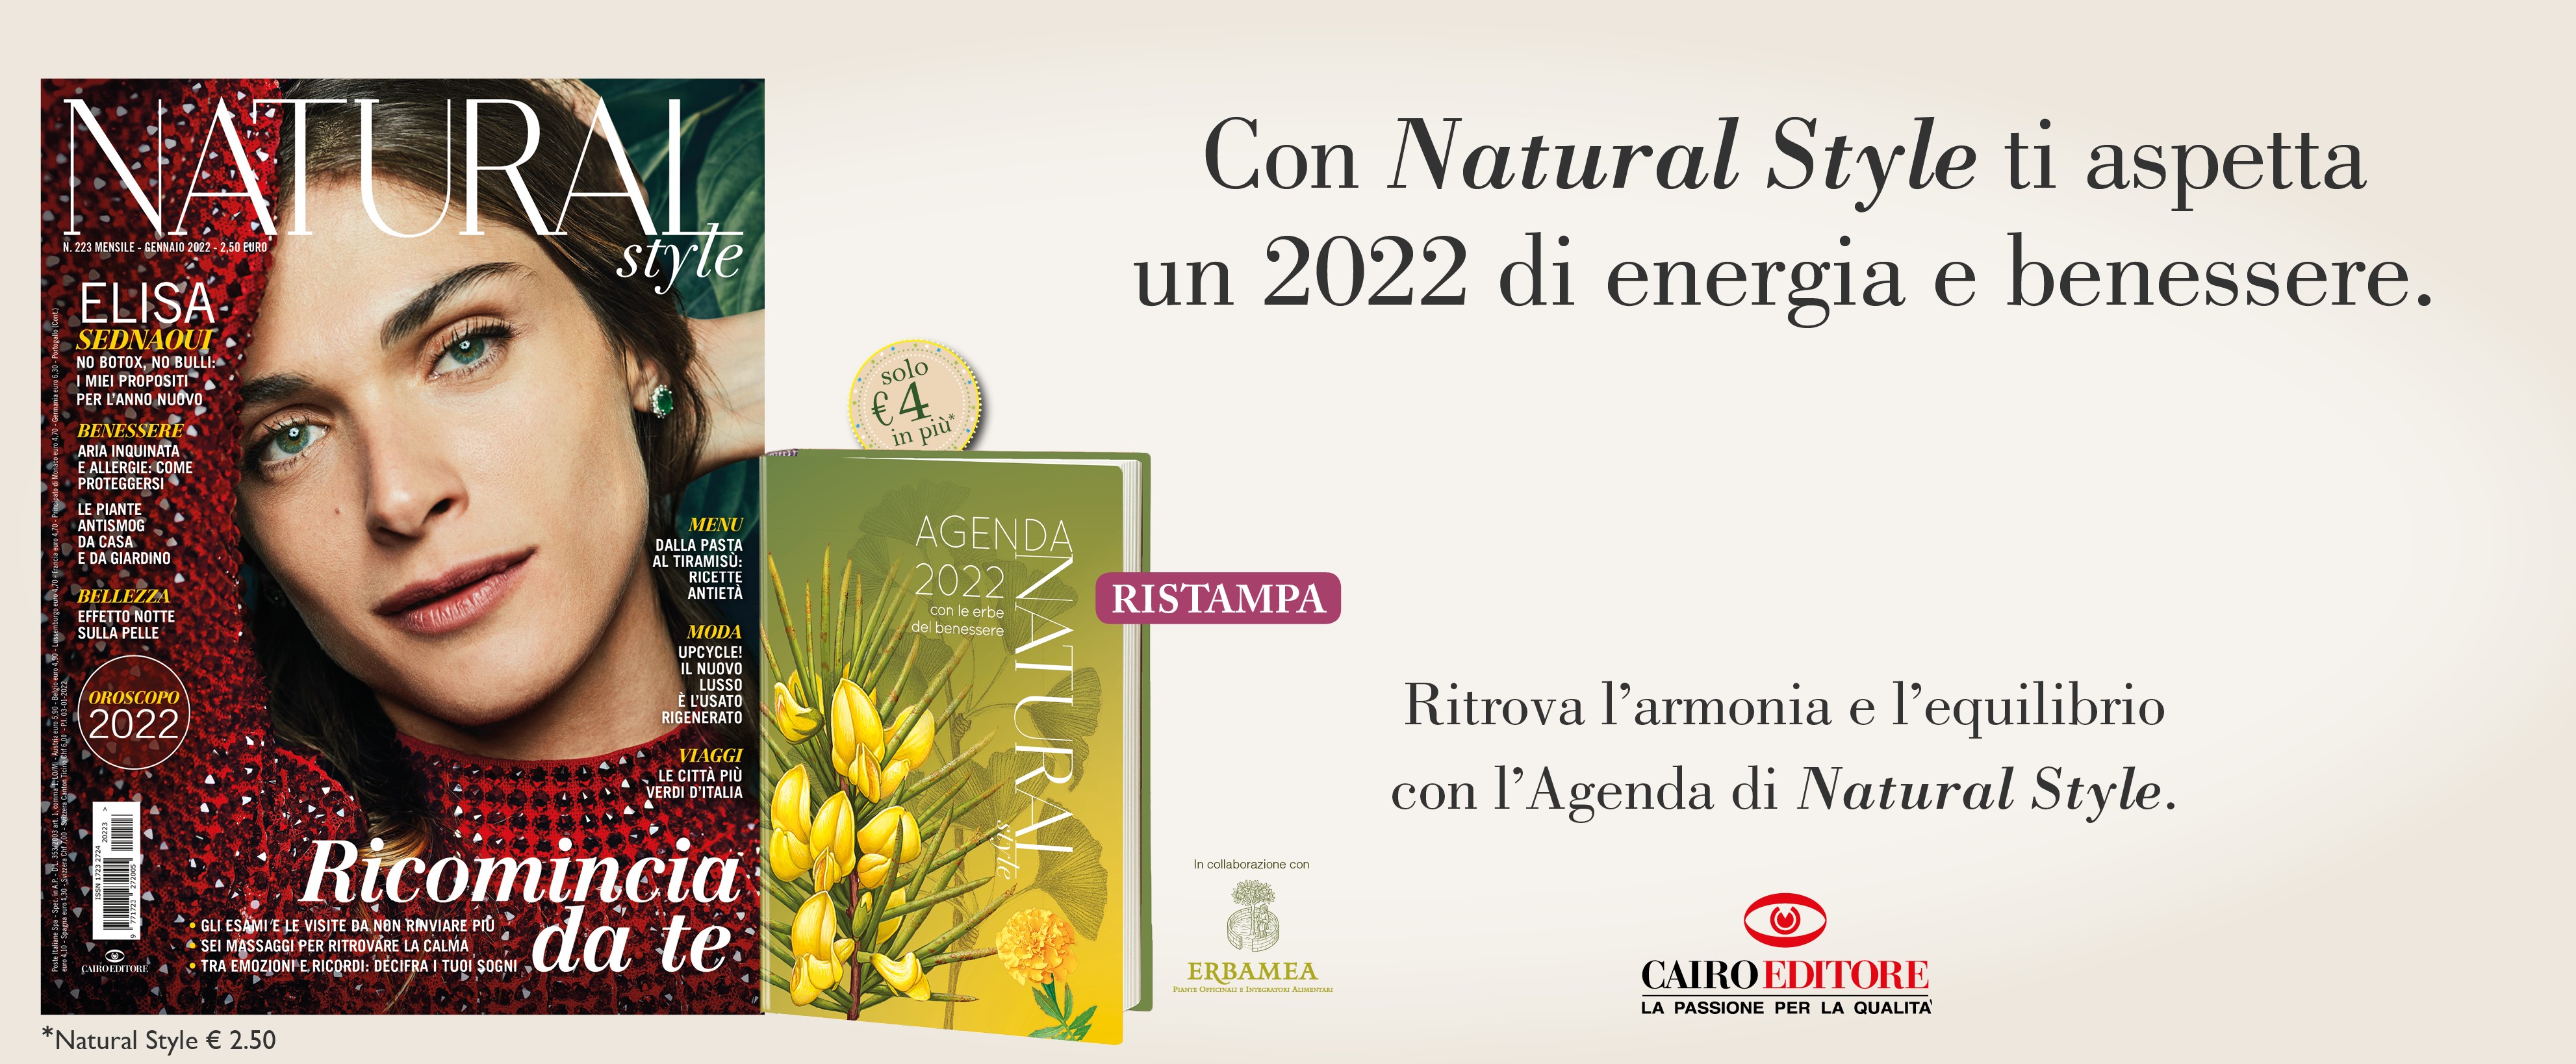 Con Natural Style ti aspetta un 2022 di energia e benessere. 